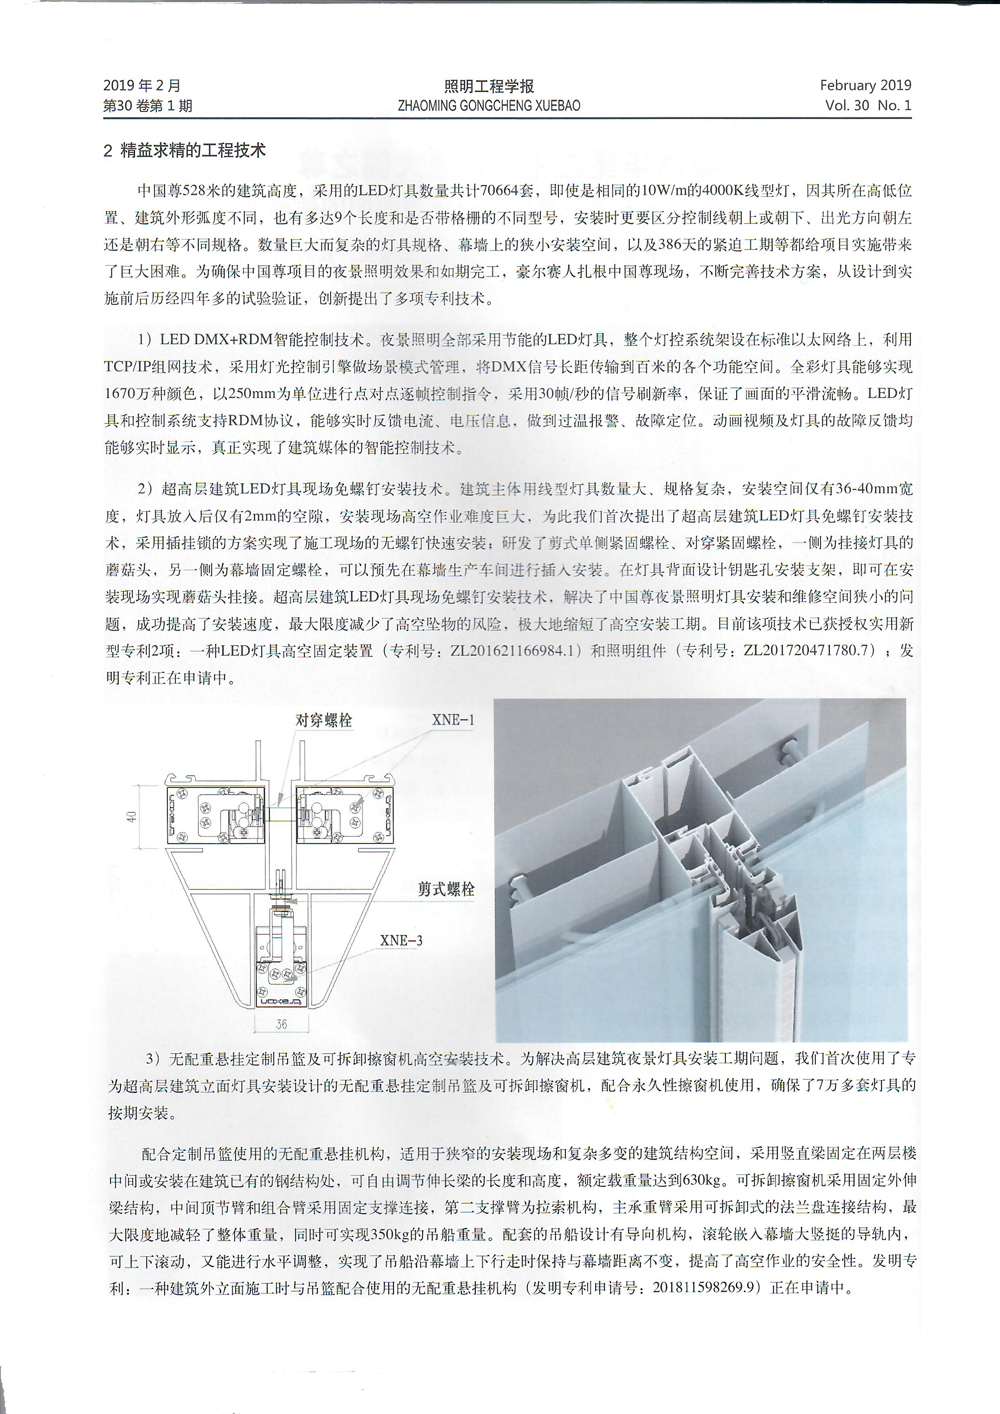 中国尊2-照明工程学报-PS-小.jpg